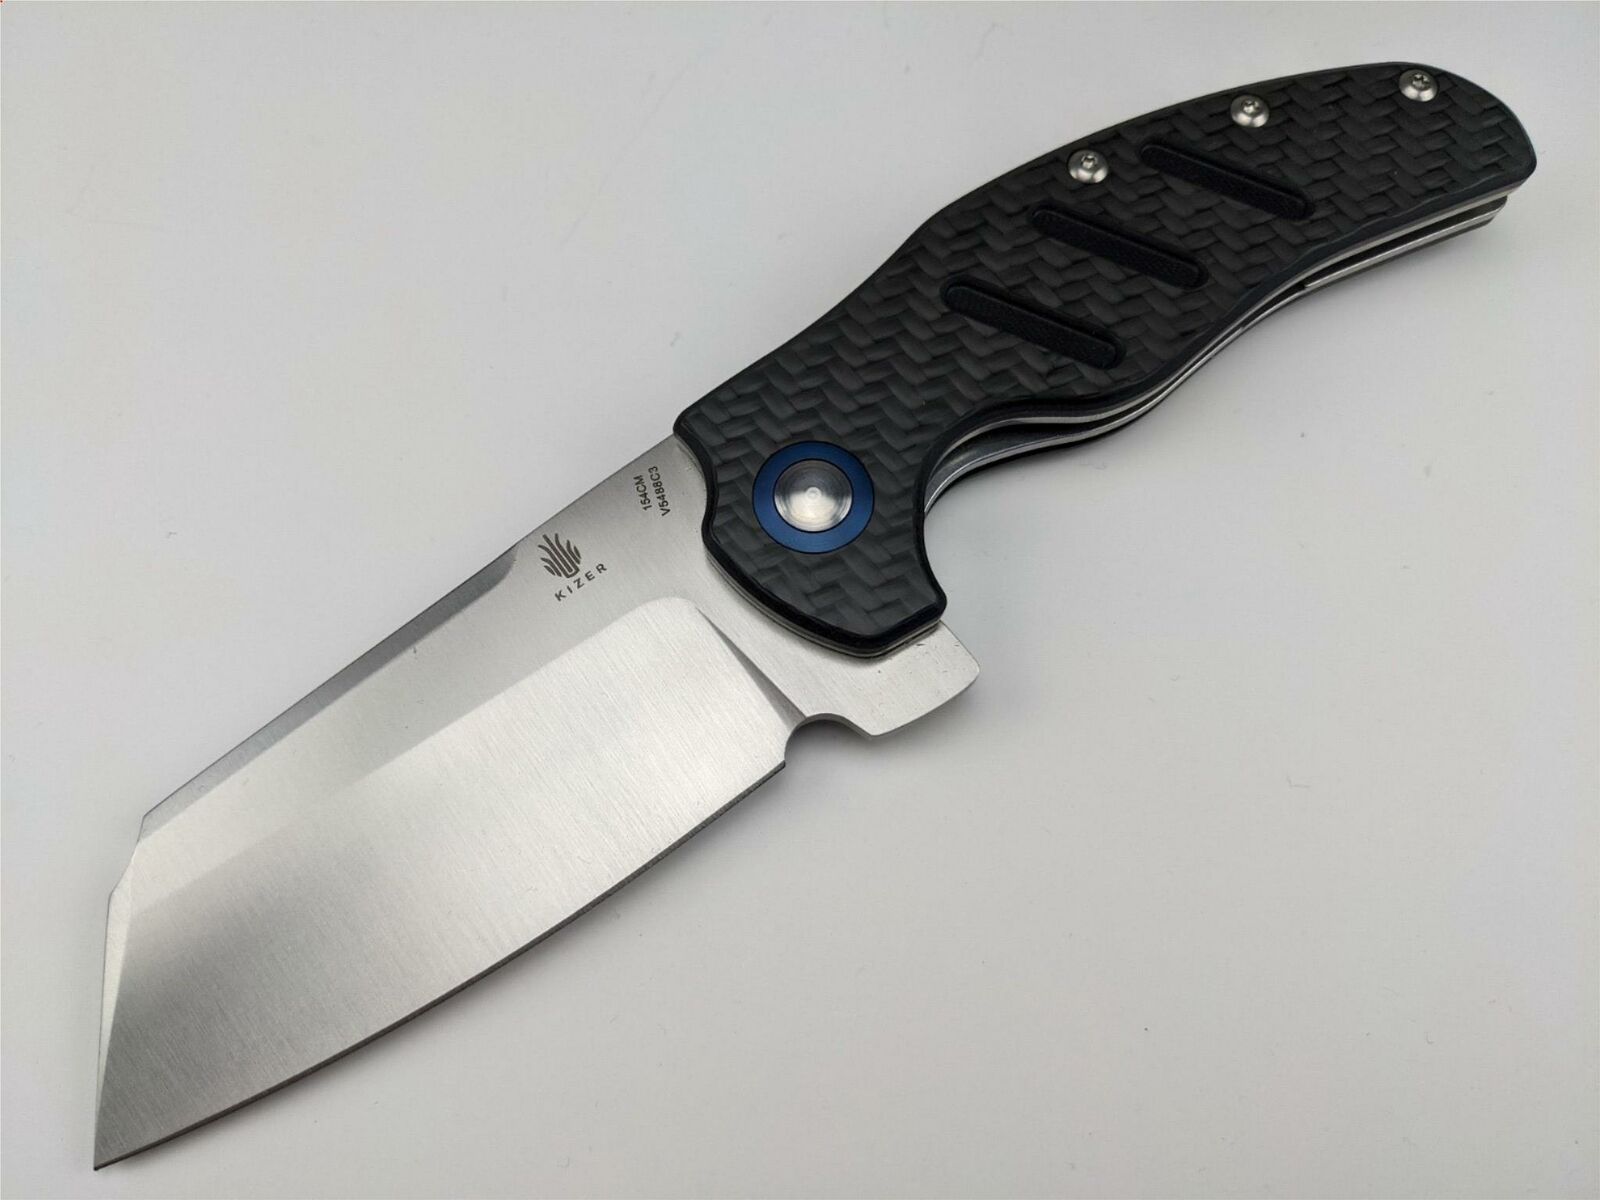 Kizer Sheepdog XL C01C Knife - V5488C3 154CM Blade Steel - Carbon Fiber Handle